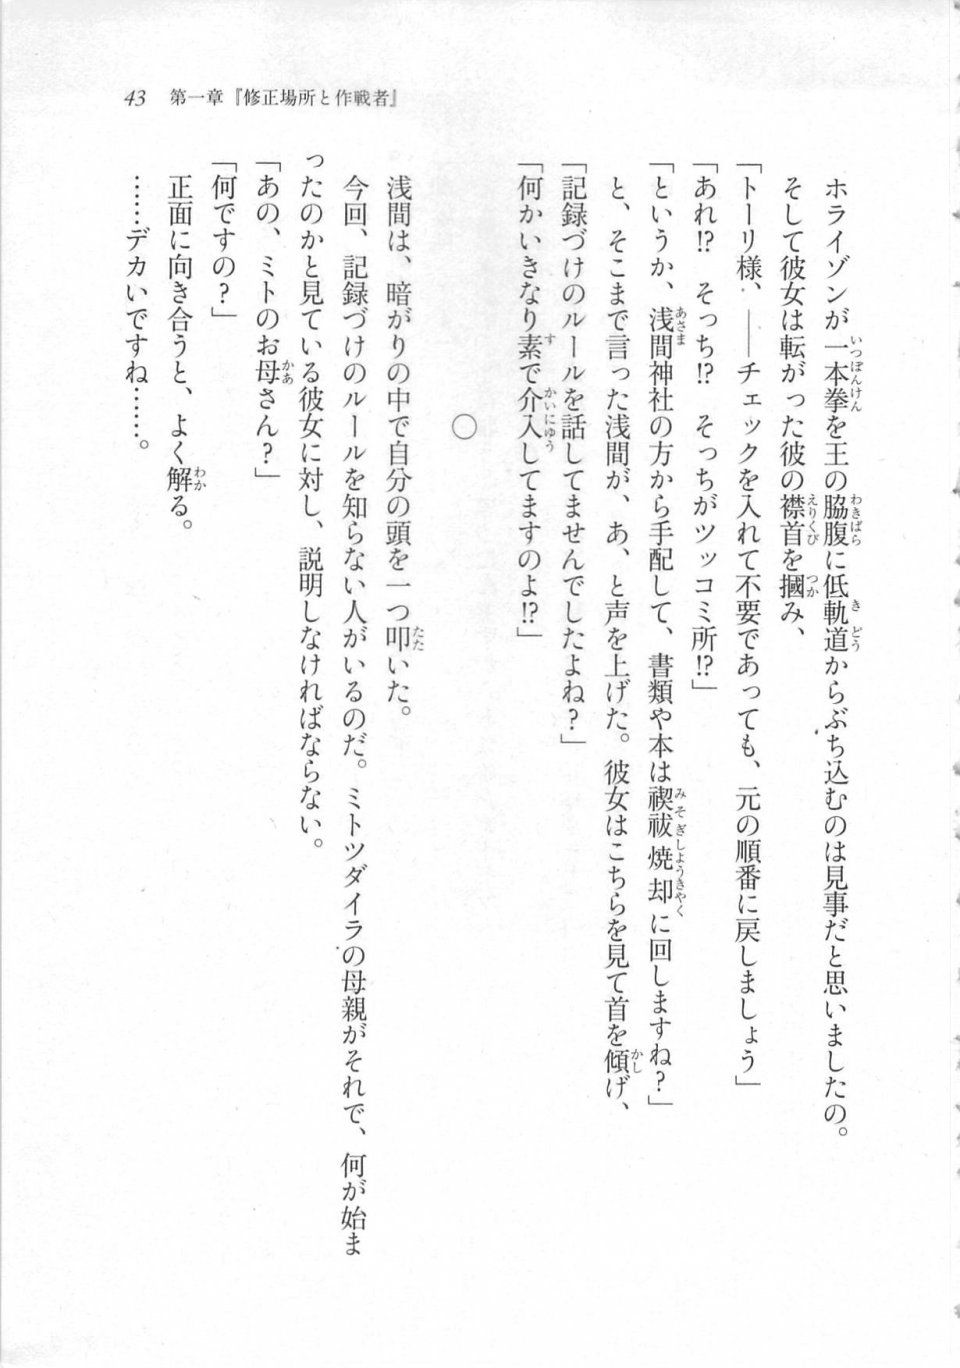 Kyoukai Senjou no Horizon LN Sidestory Vol 3 - Photo #47